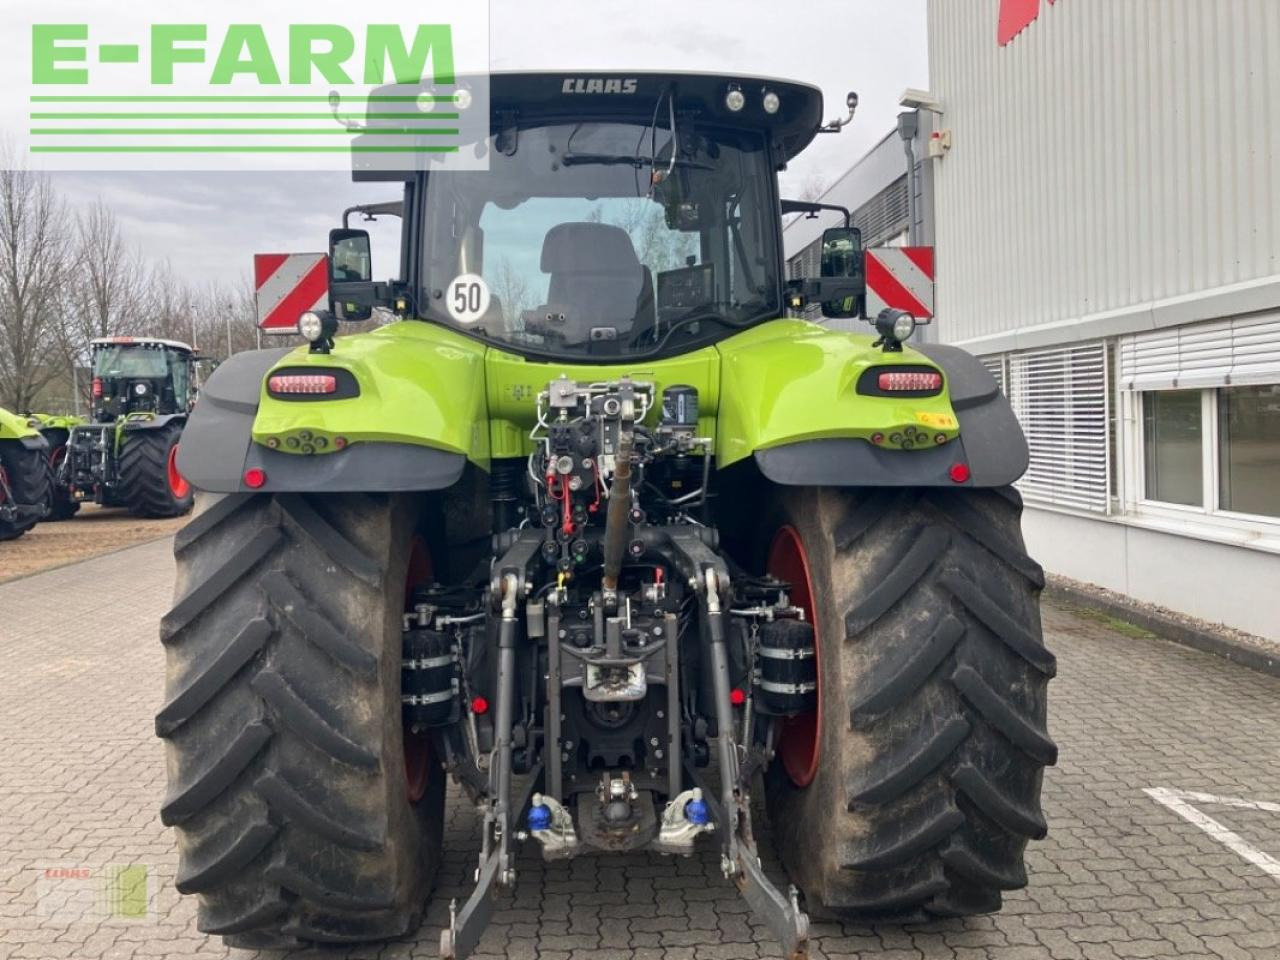 Farm tractor CLAAS axion 870 cmatic